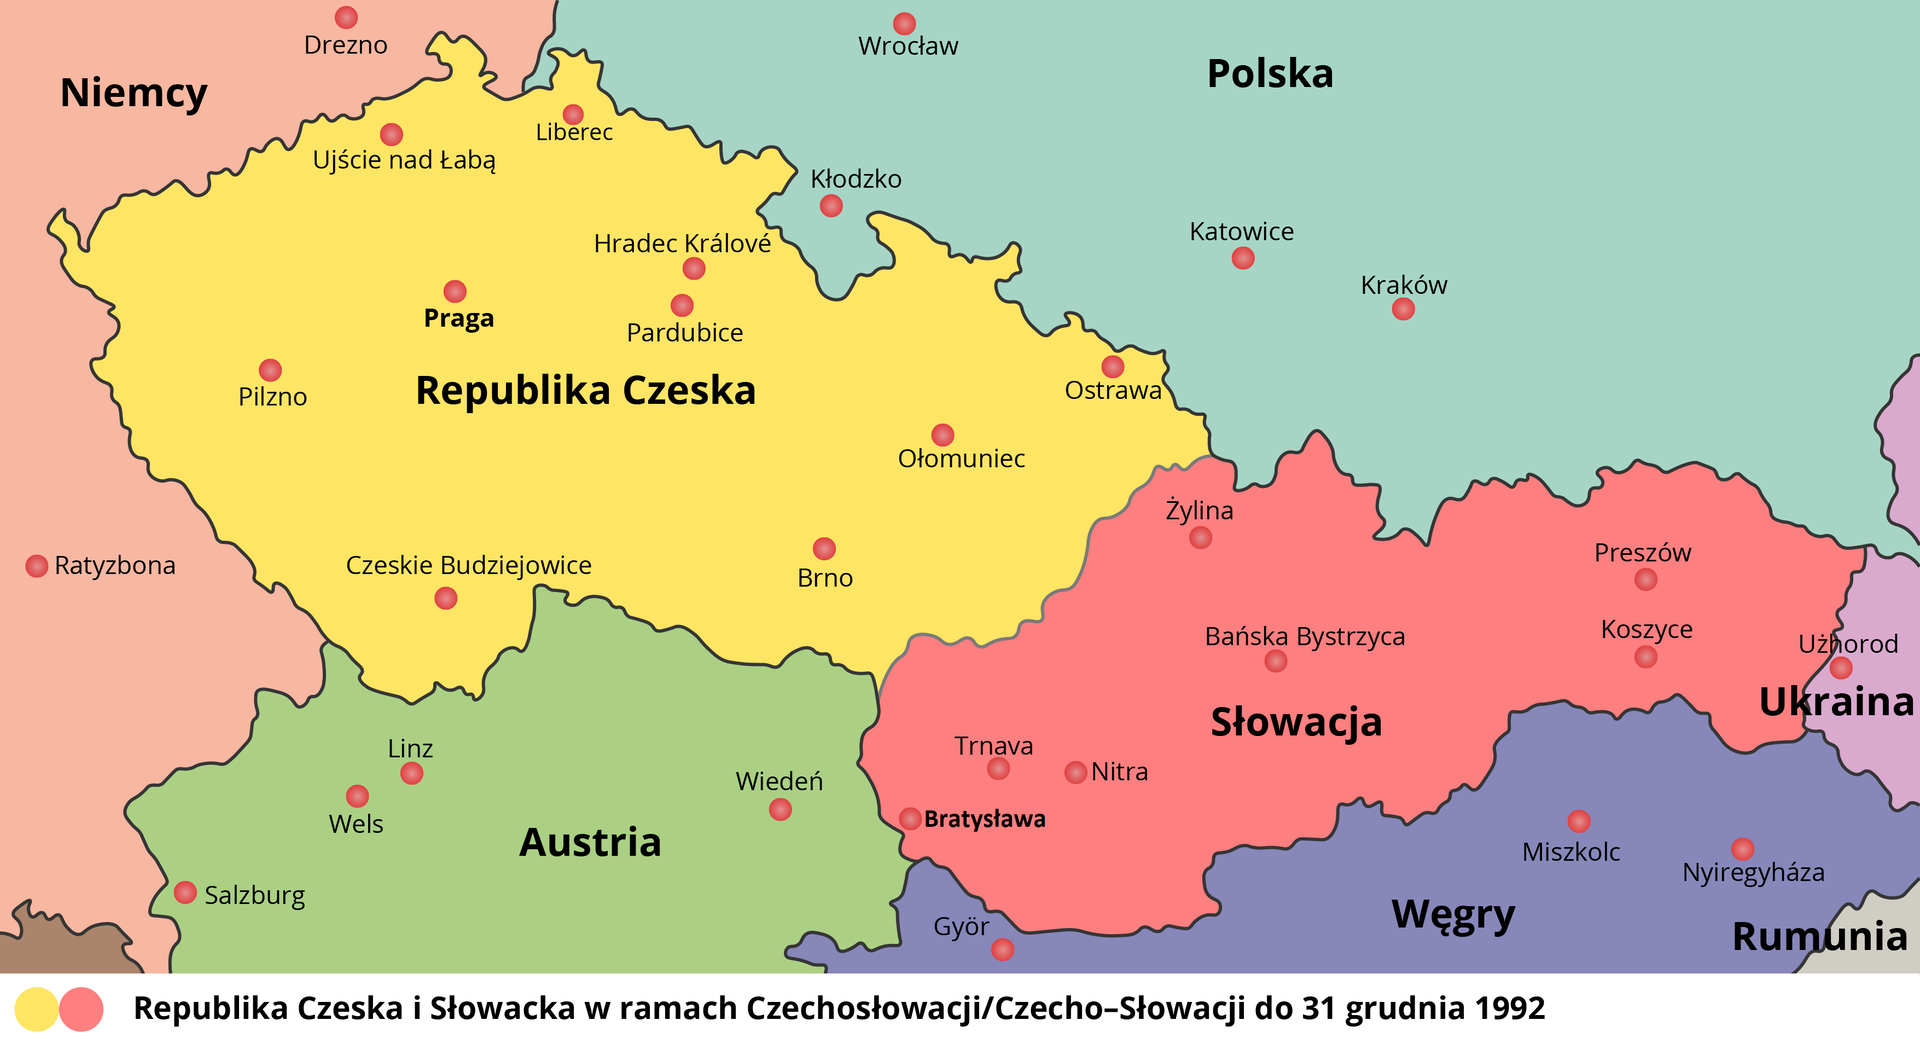 Mapa przedstawia część Europy, na której widnieje Republika Czeska i Słowacka w ramach Czechosłowacji do 31 grudnia 1992. Są na niej zaznaczone najważniejsze miasta obu państw, widoczna jest także część Niemiec, Polski, Austrii i Węgier. 